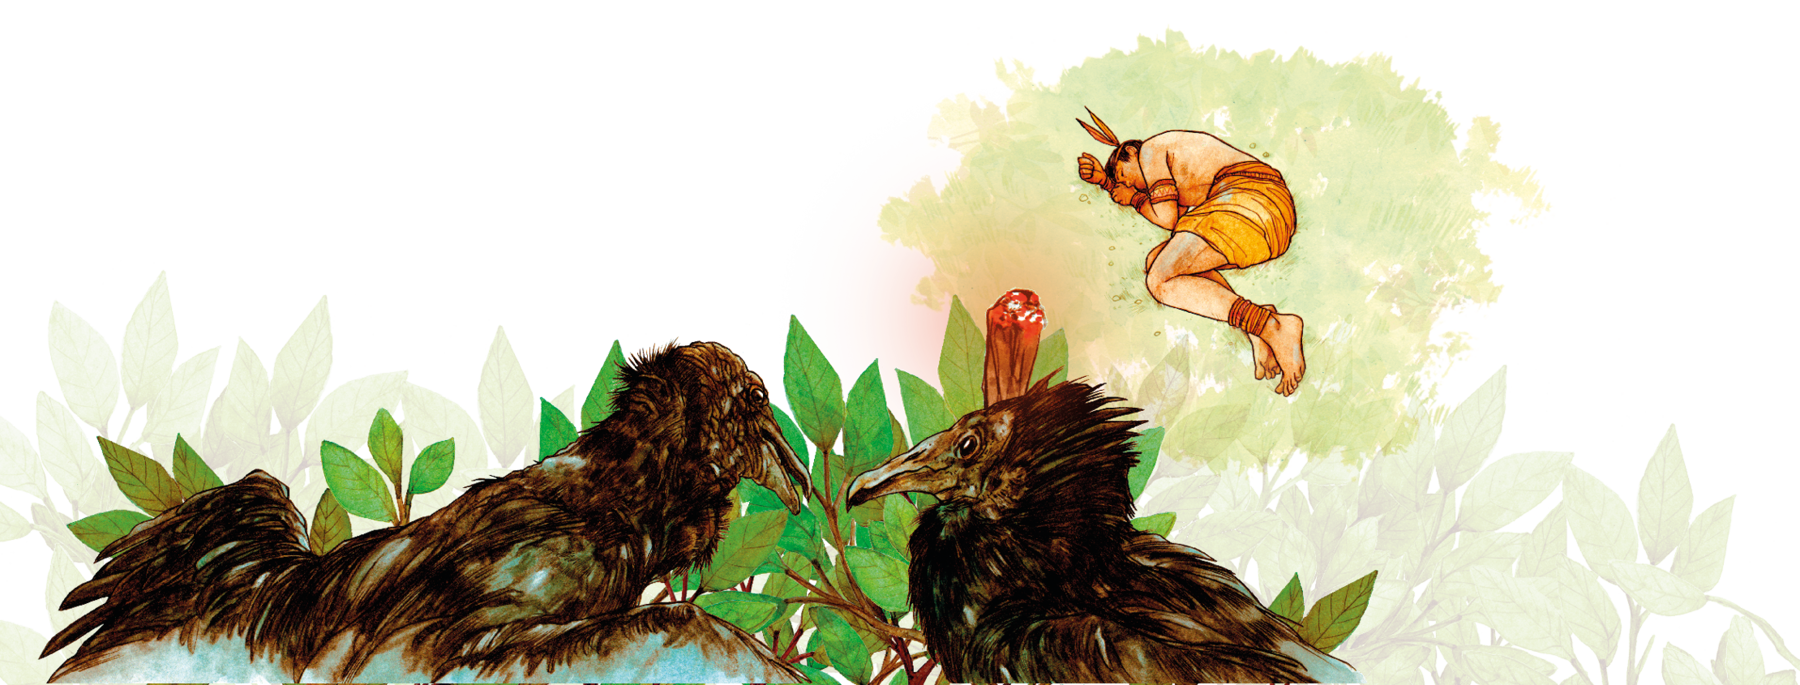 lustração. Duas aves pretas no topo de uma árvore. Próximo a elas, uma tocha com fogo. Ao fundo, um jovem indígena deitado no chão, com as pernas encolhidas.